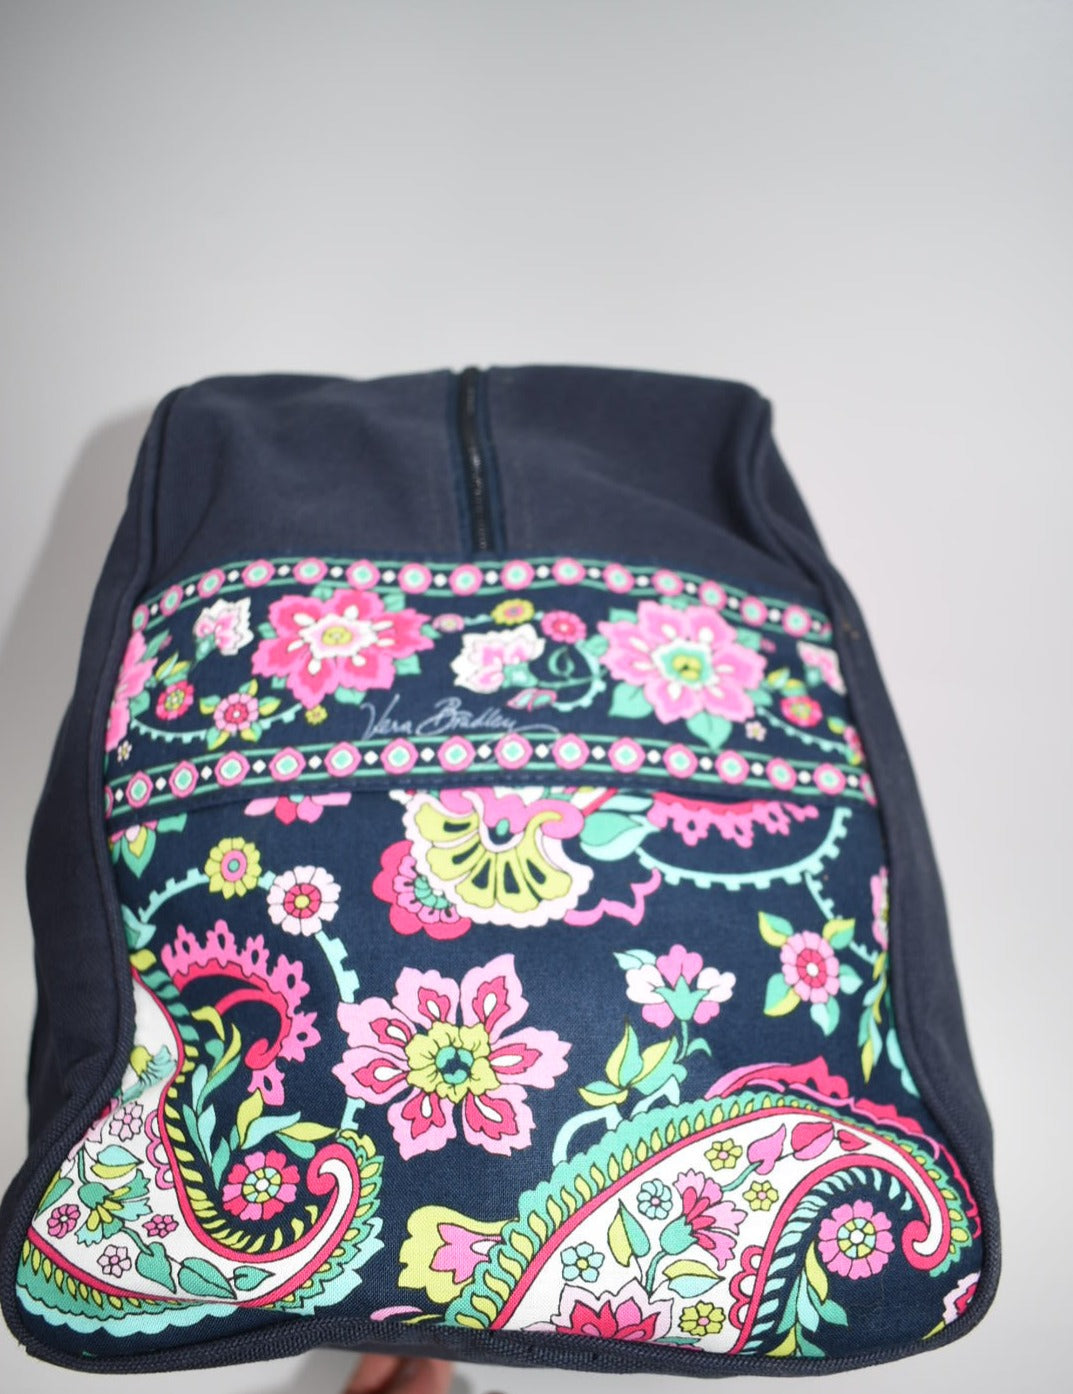 Vera Bradley Colorblock Duffel Bag in Petal Paisley Pattern